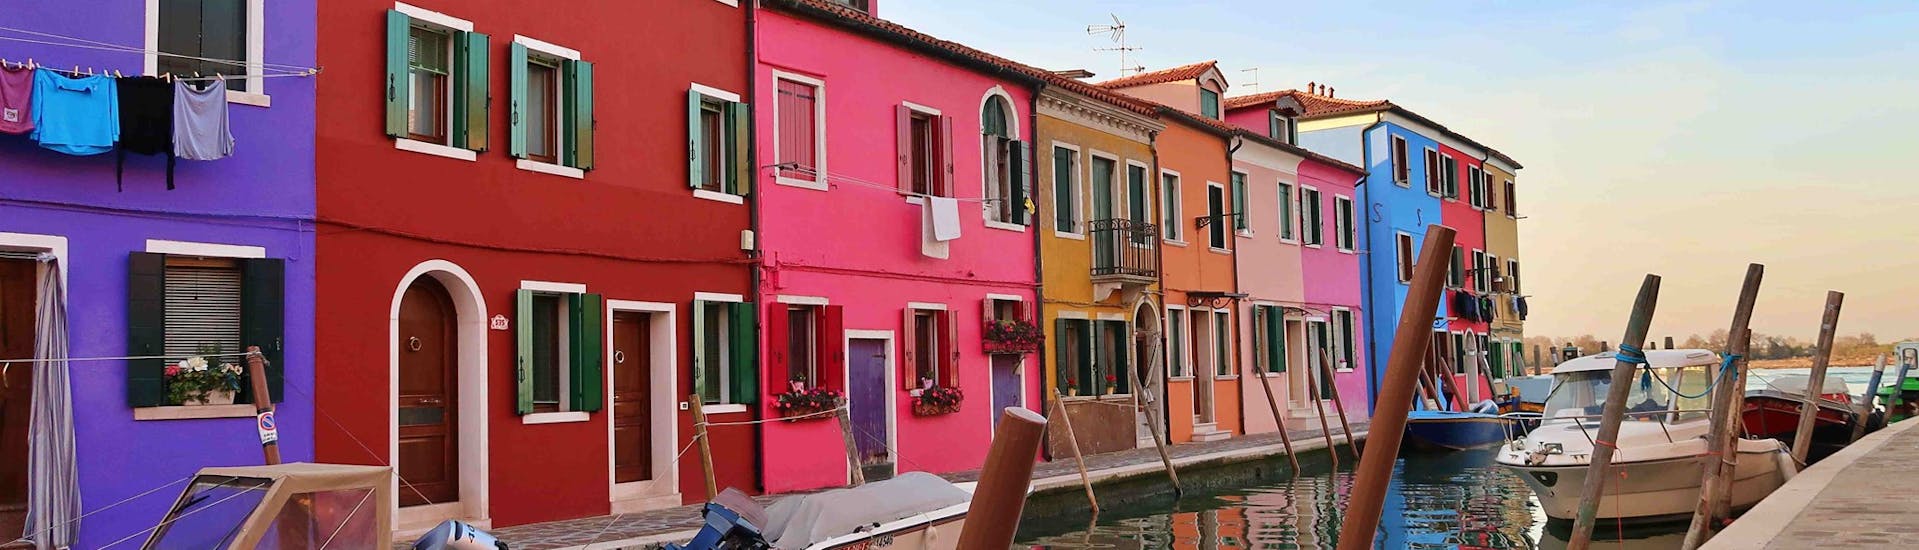 Kleurrijke huizen langs een kanaal in Burano gezien tijdens de boottocht van Venetië naar Murano en Burano met Il Doge di Venezia.